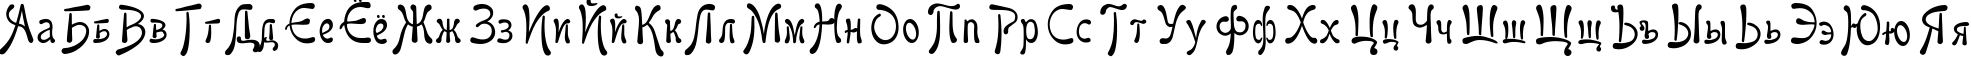 Пример написания русского алфавита шрифтом Favorit